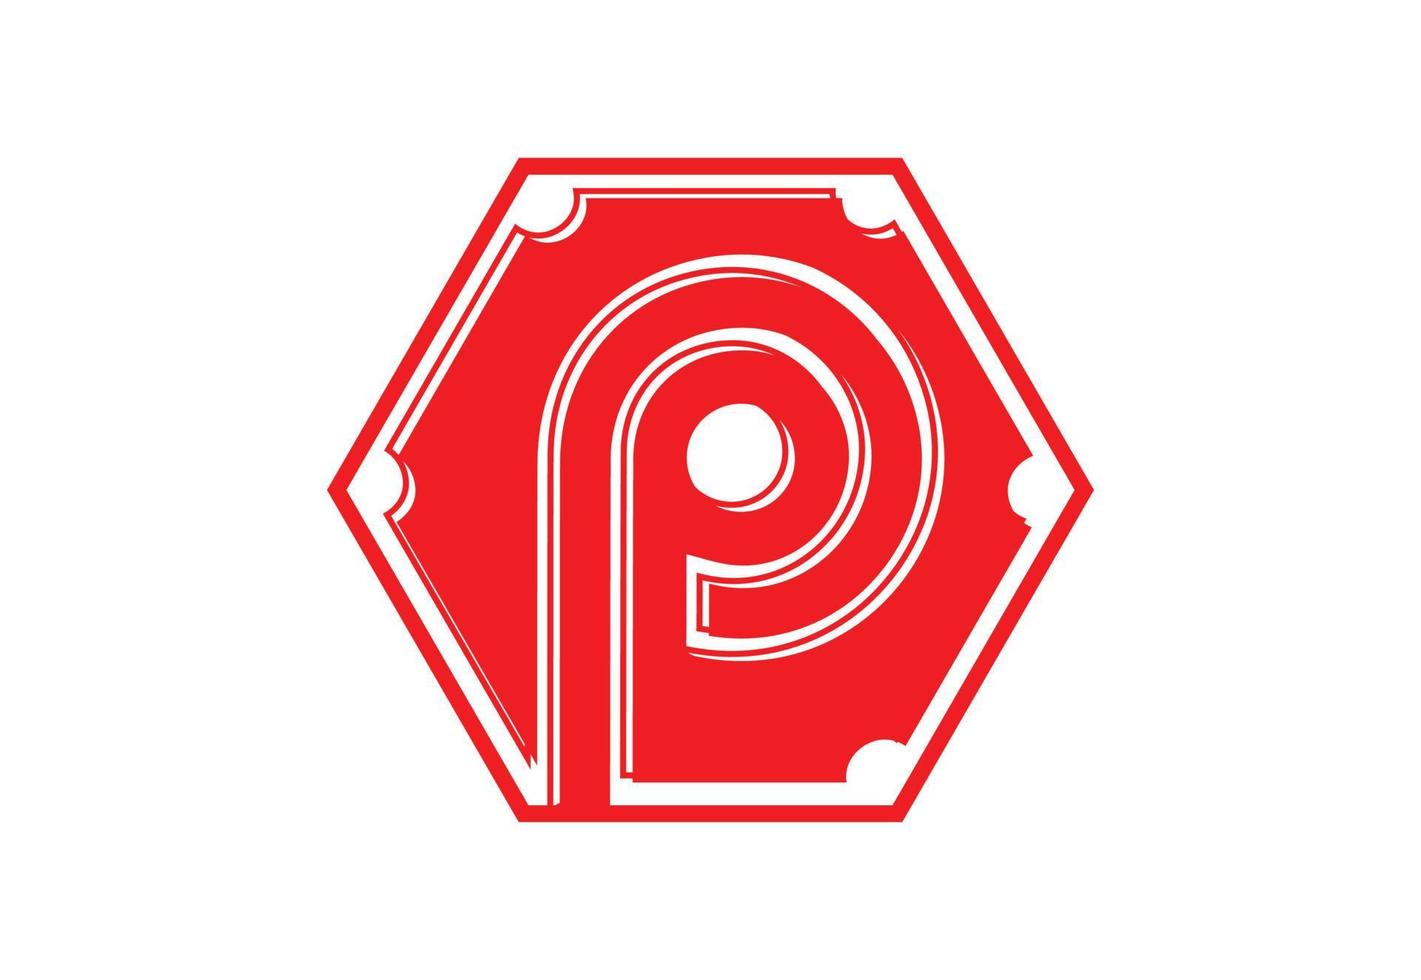 p-Brief-Logo und Icon-Design-Vorlage vektor